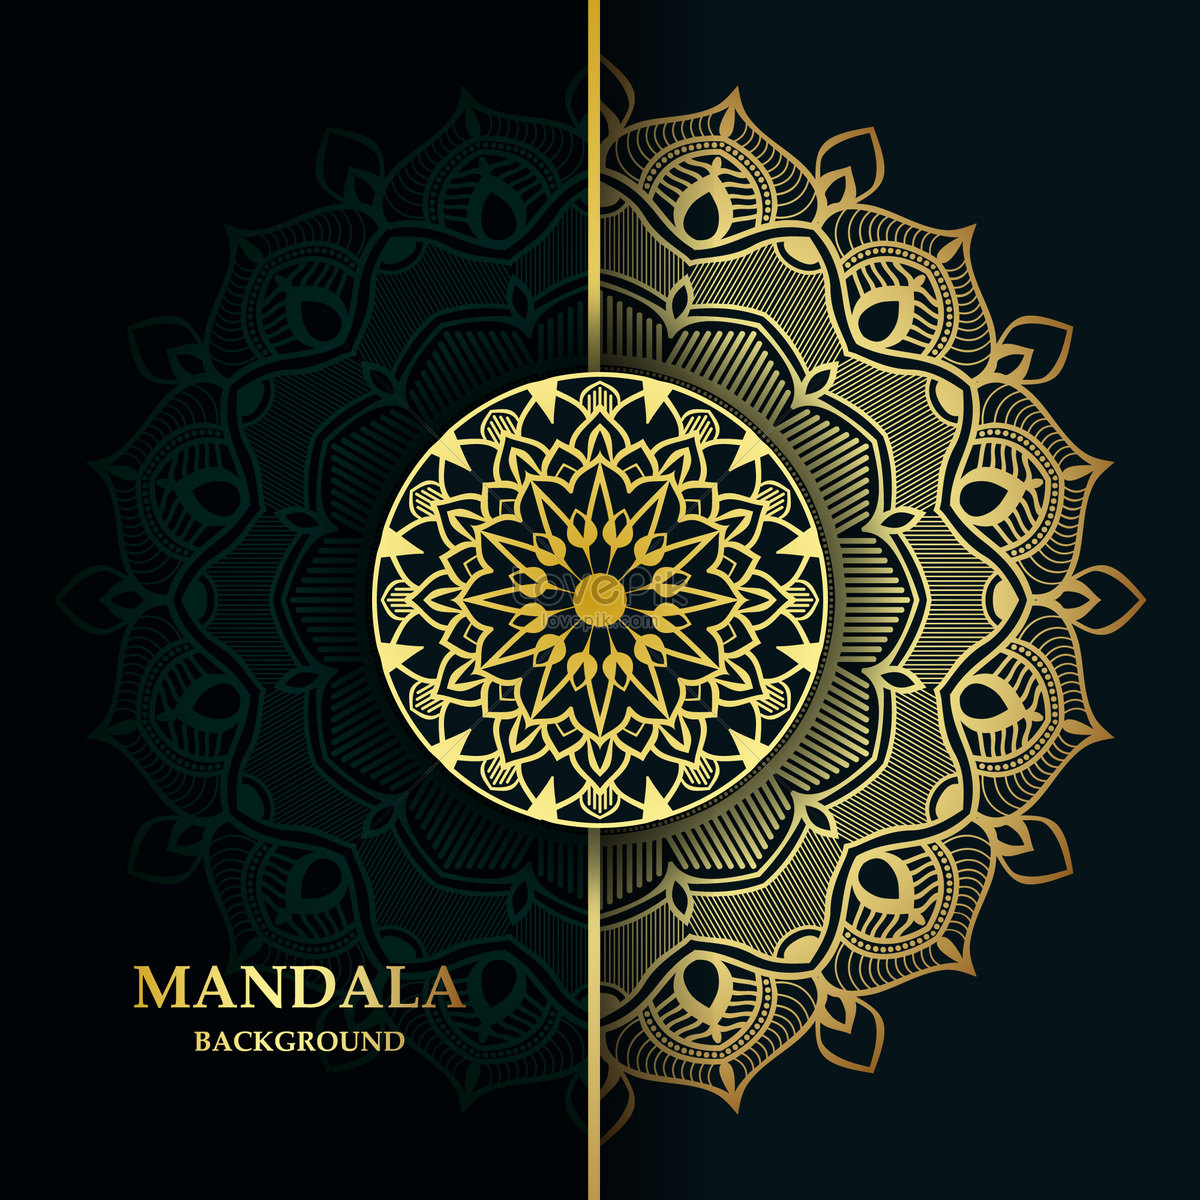 Thiết kế hình nền chuyên nghiệp Mandala là sự lựa chọn hoàn hảo cho những người yêu thích sự độc đáo và phong cách. Hình ảnh tinh tế, đặc biệt và được tạo nên từ những nét vẽ tinh xảo chắc chắn sẽ khiến bạn say mê. Hãy để hình nền chuyên nghiệp Mandala tạo nét đặc sắc cho bản thiết kế của bạn! 